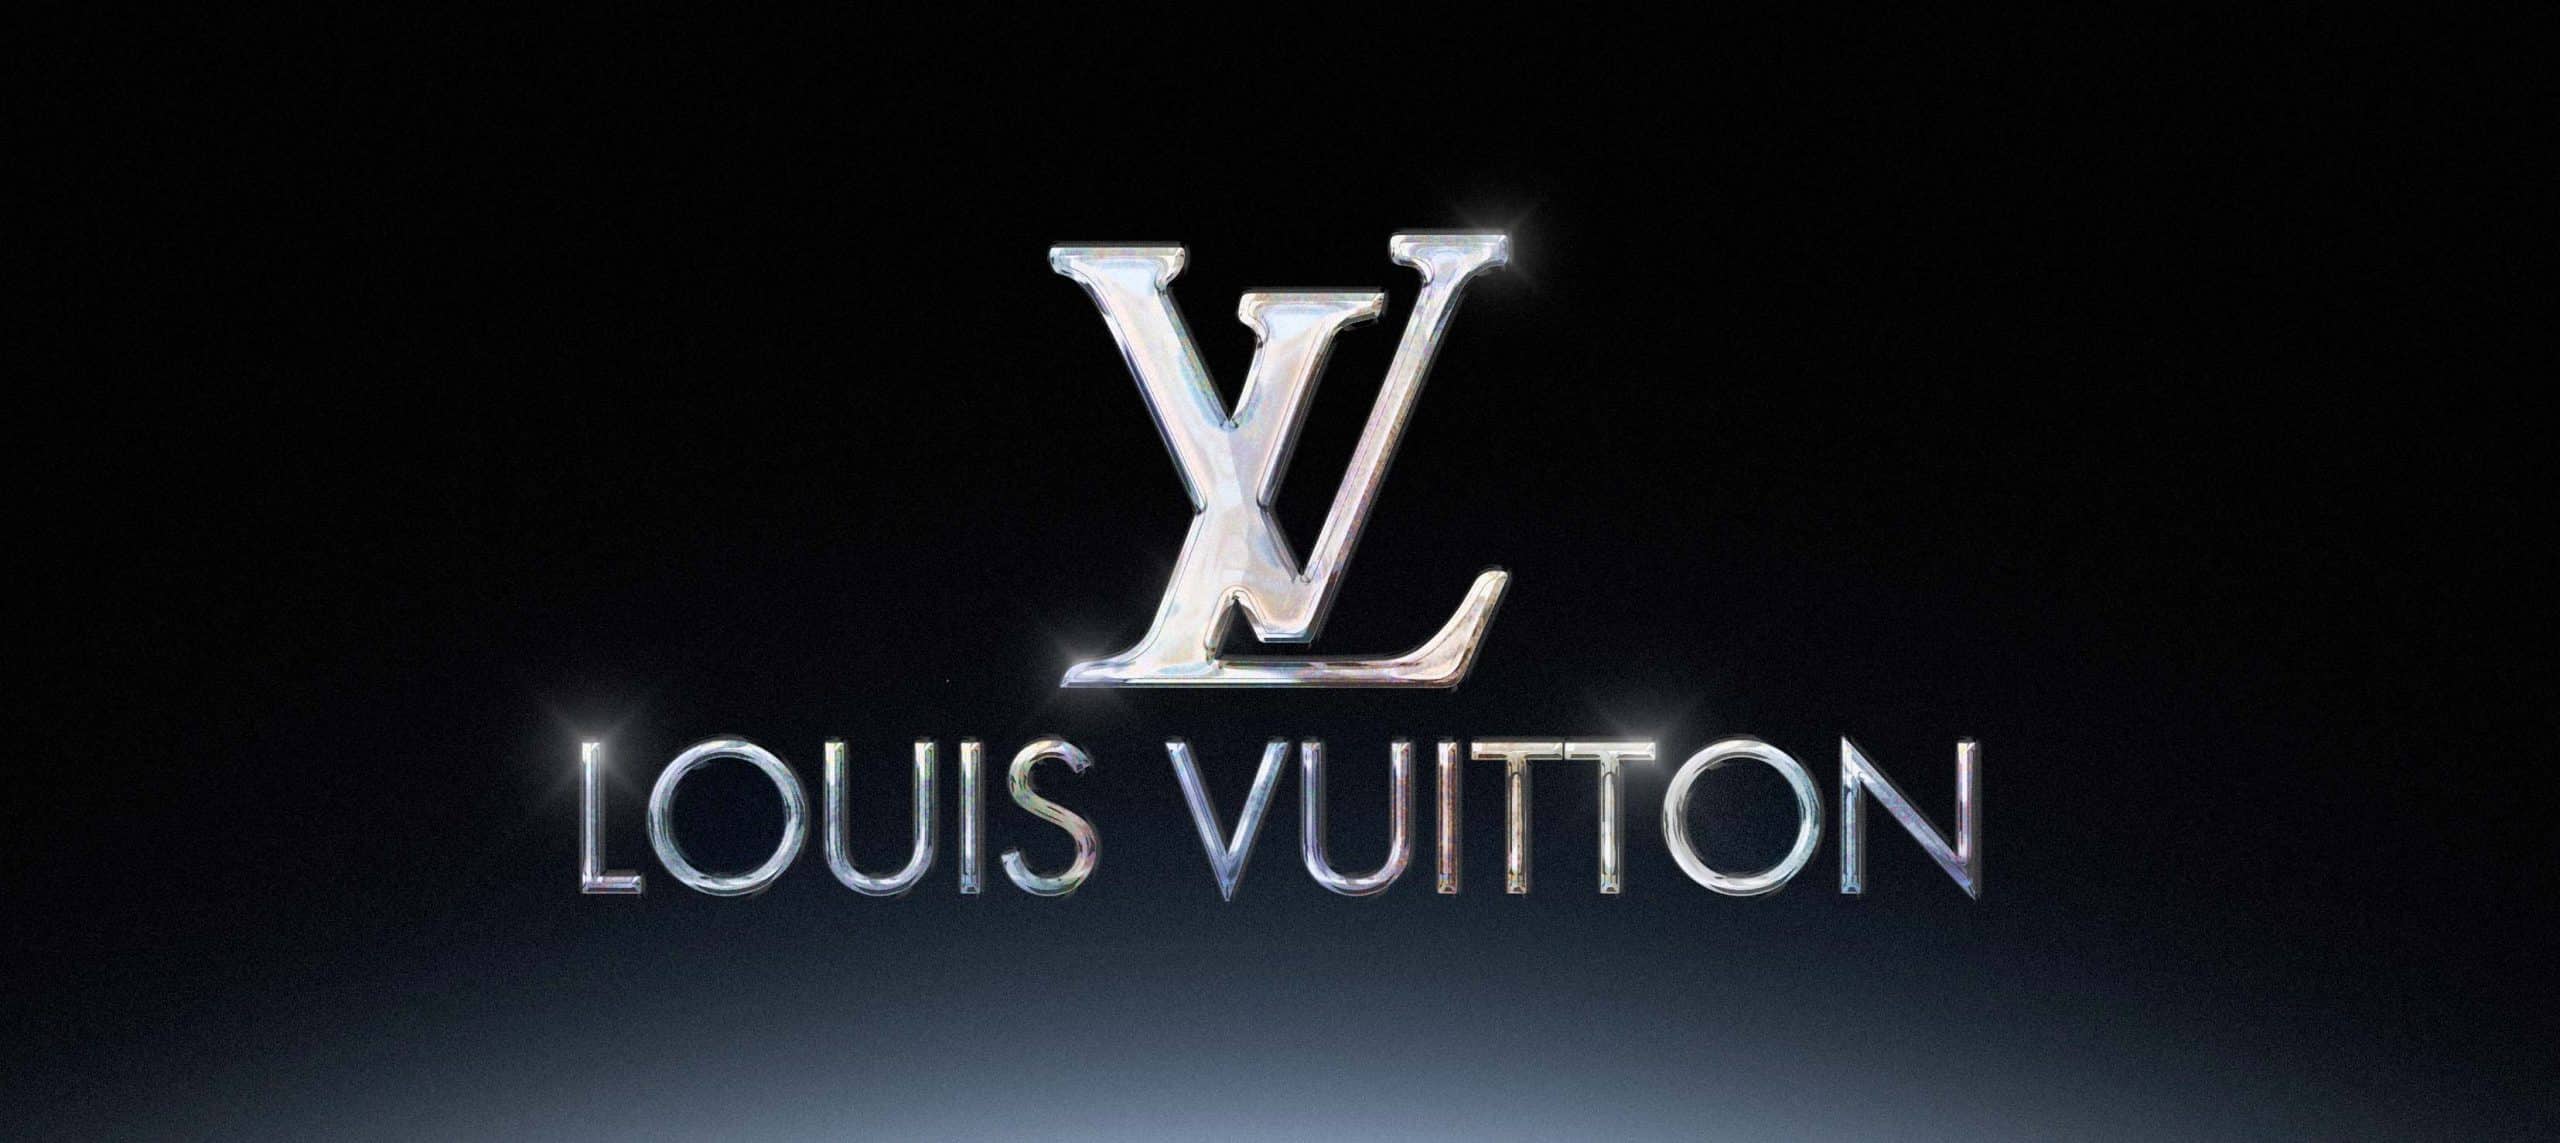 Comment Louis Vuitton se démarque ?